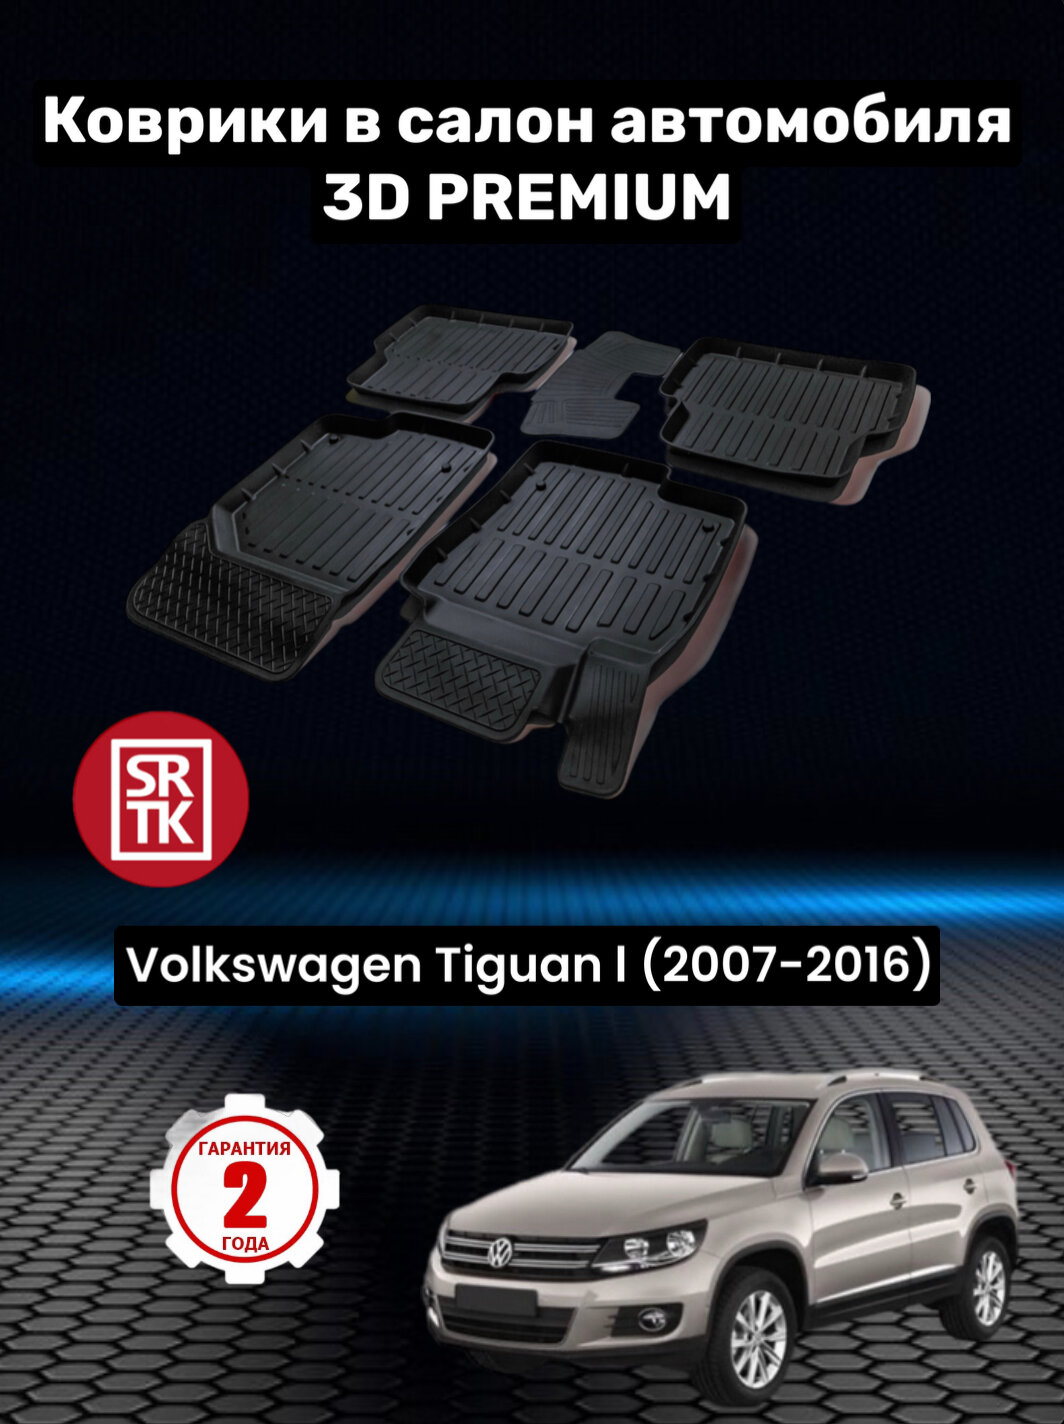 Коврики резиновые в салон для Фольксваген Тигуан /Volkswagen Tiguan (2007-2016)/3D PREMIUM SRTK (Саранск) комплект в салон